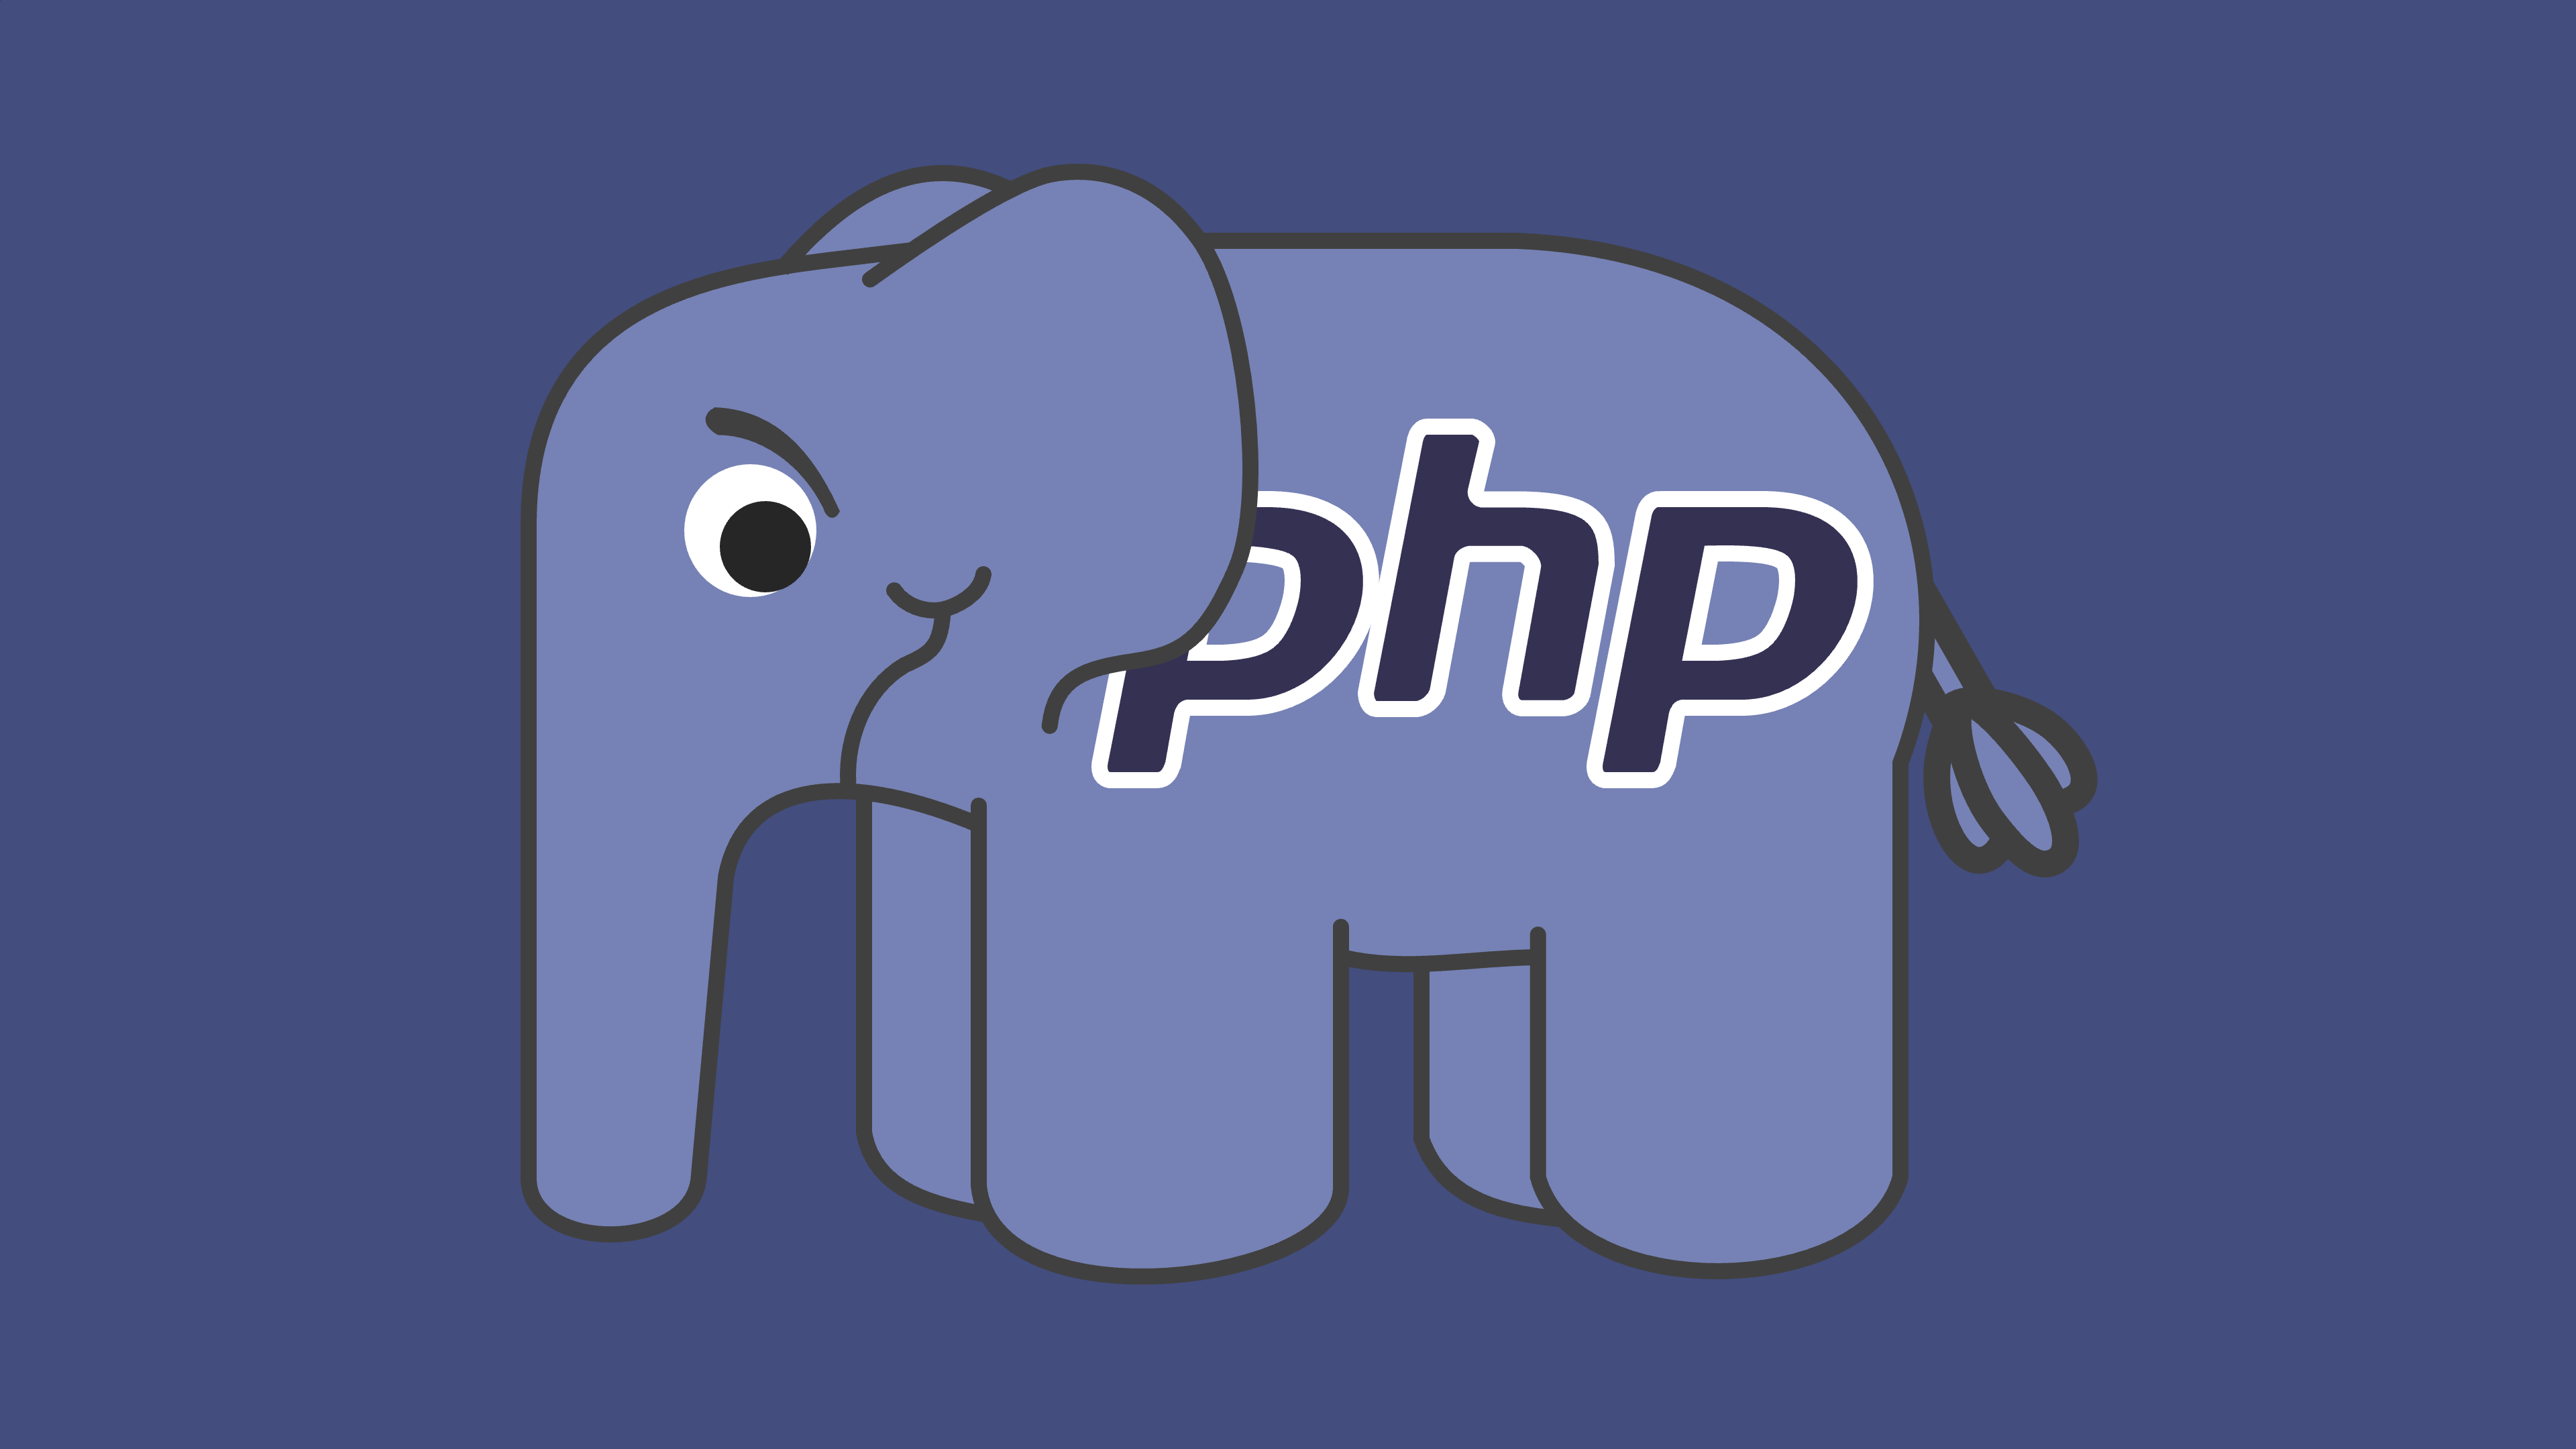 A sad PHP elephant